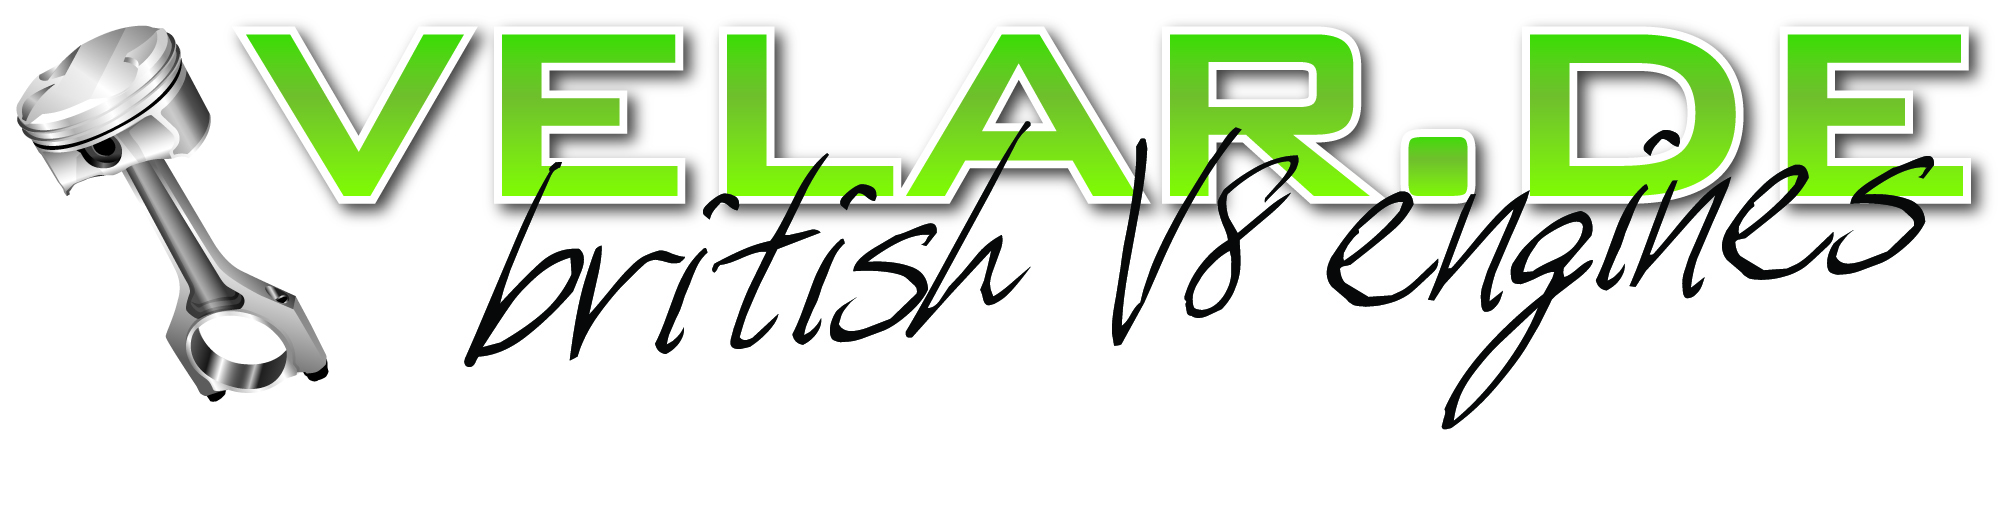 Das Logo von Velar.de beinhaltet den Namen Velar.de in grüner großer Schrift, darunter in Schreibschrift steht british V8 engines